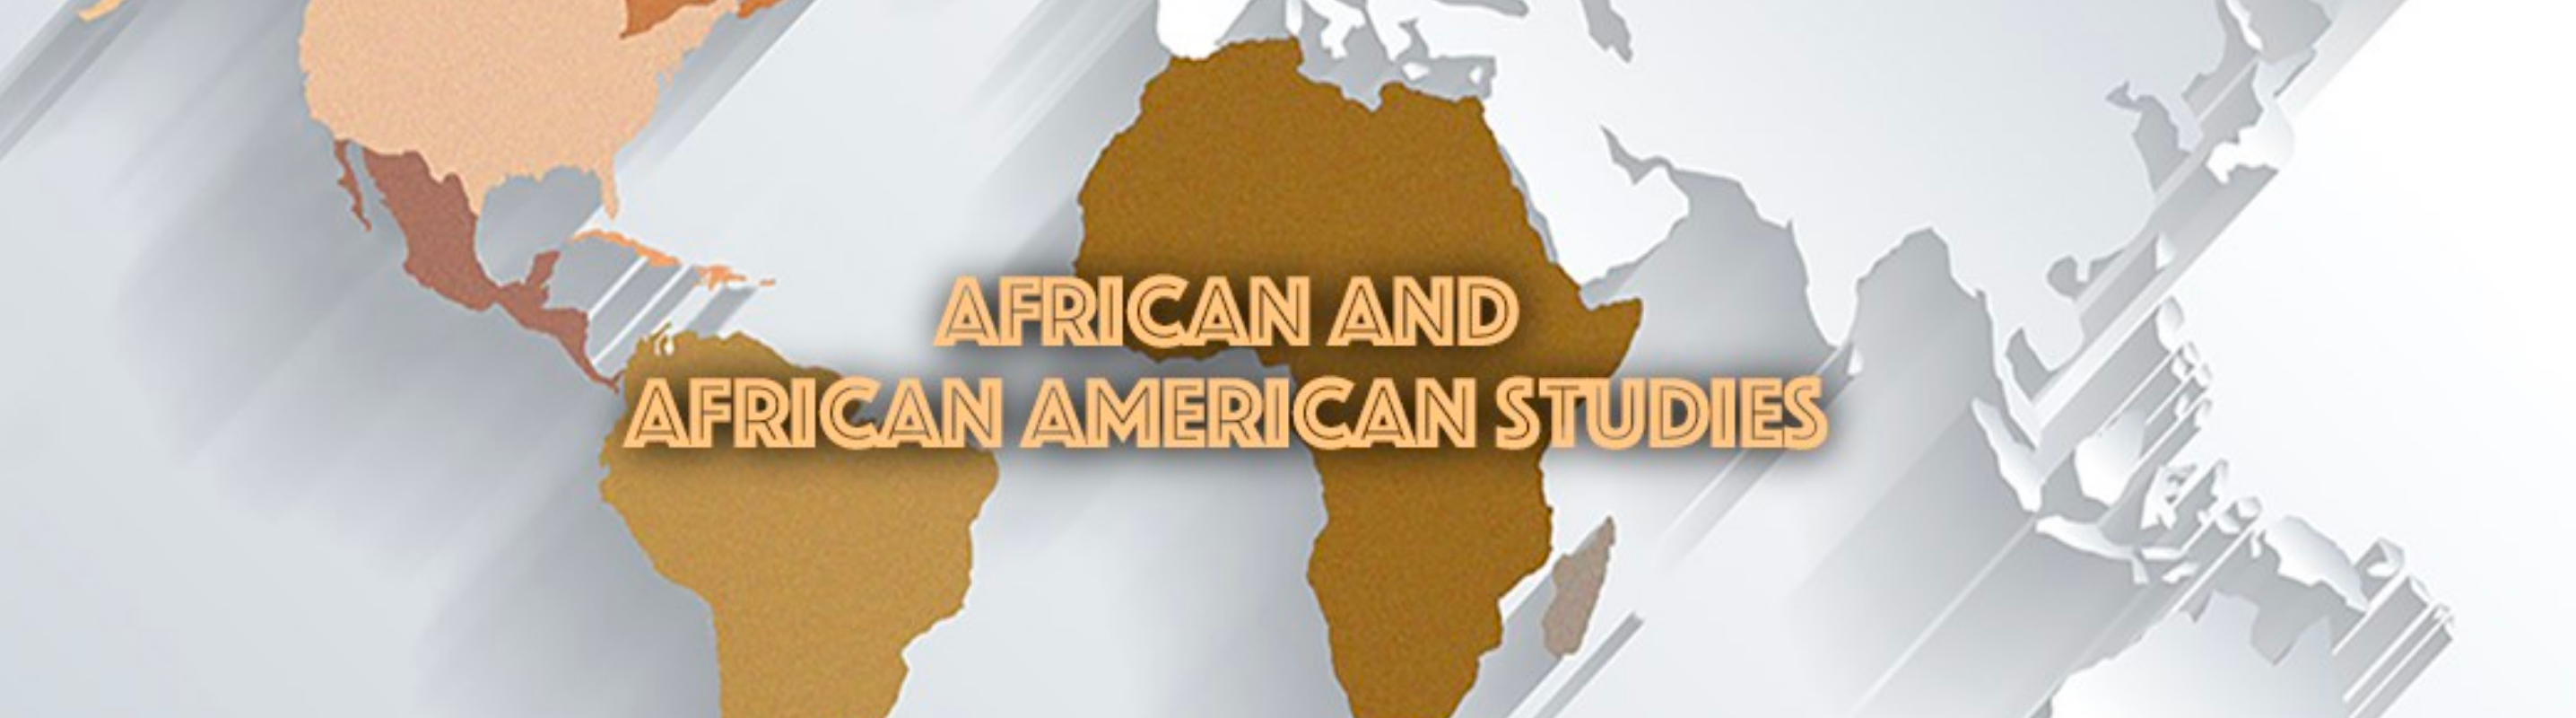 African African American Studies